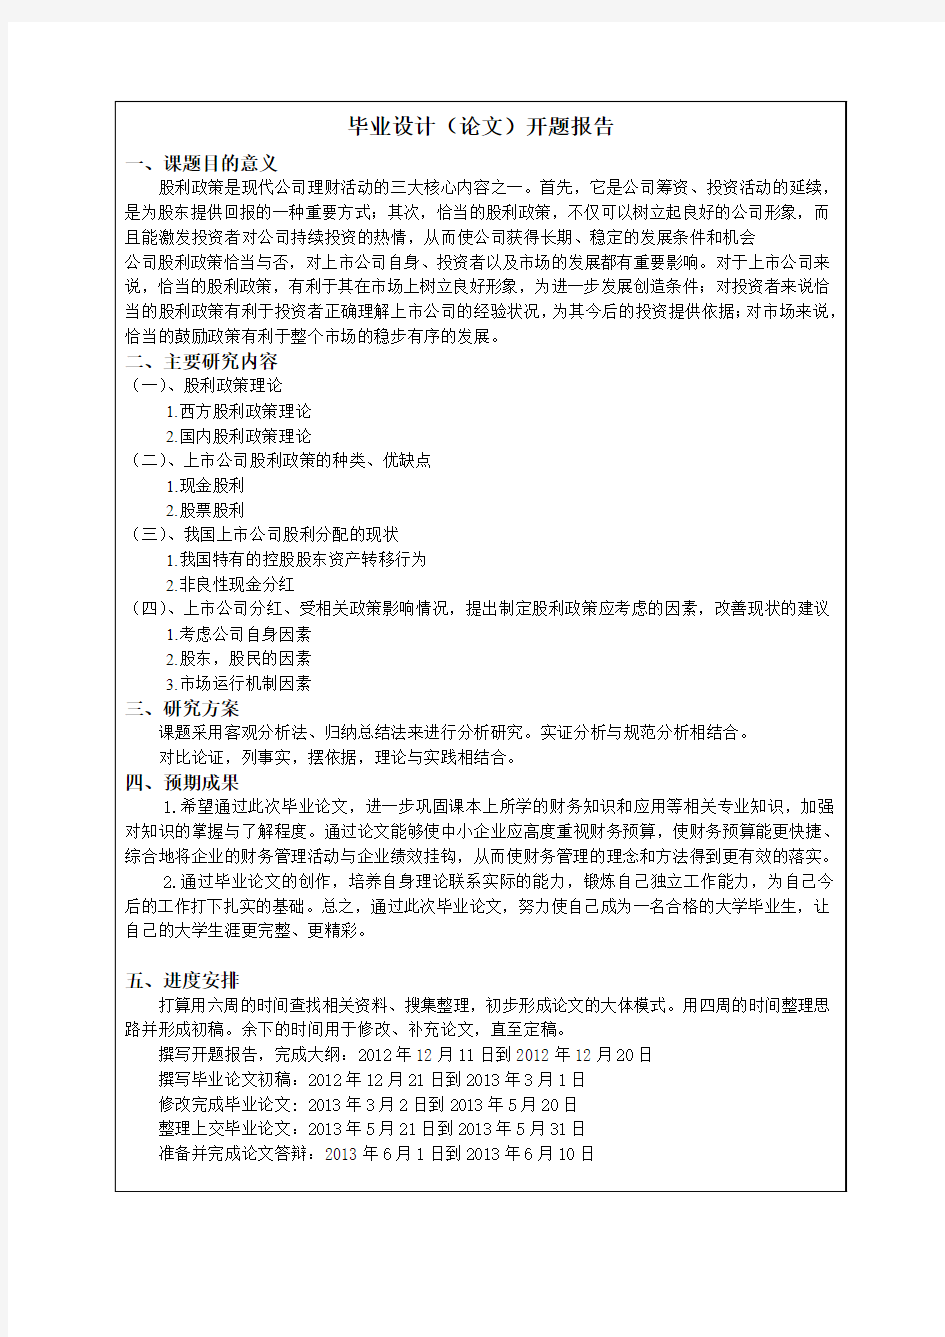 江苏理工学院毕业设计(论文)开题报告